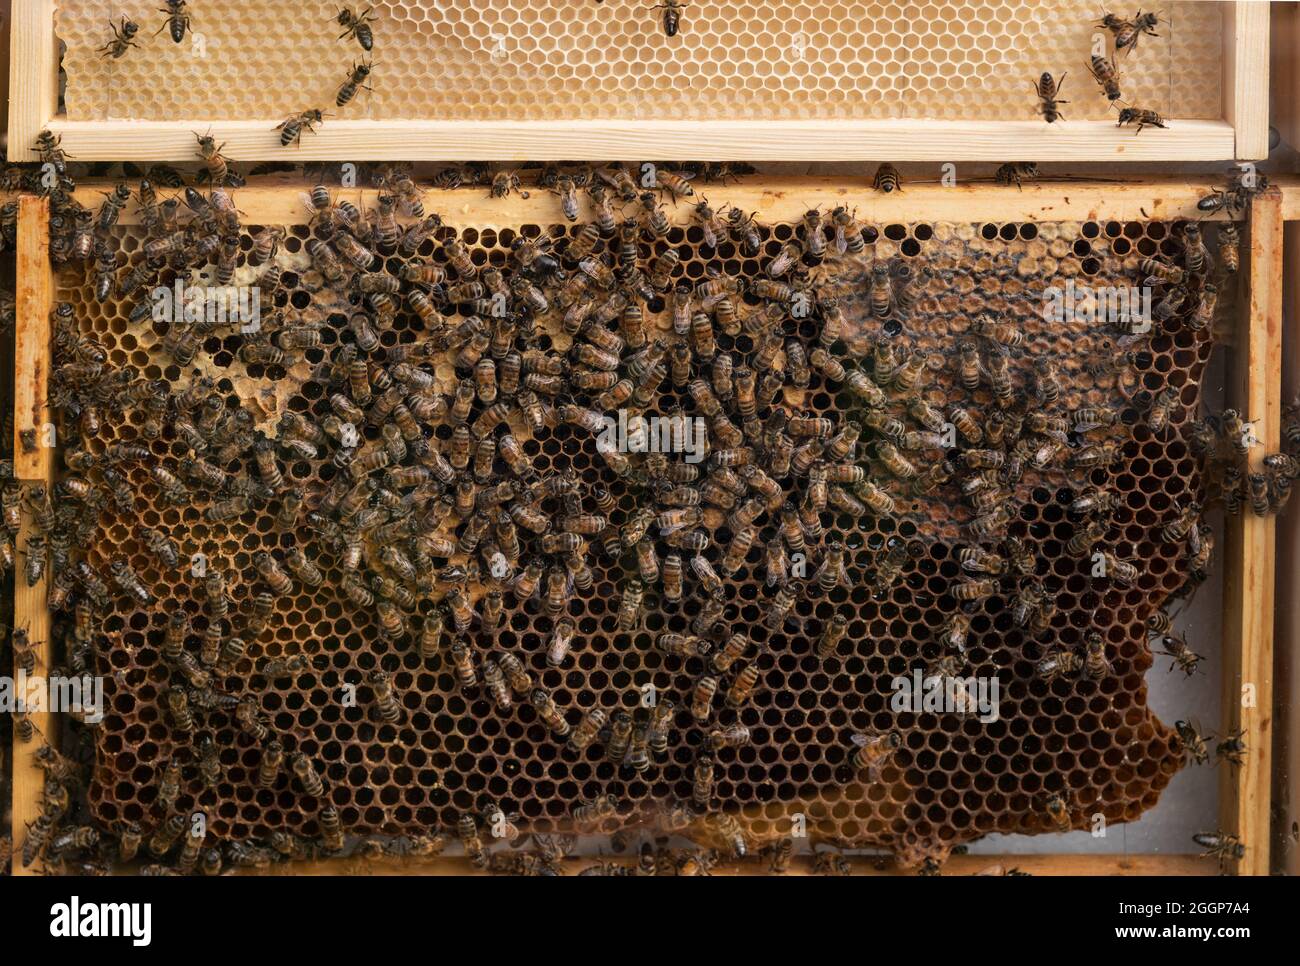 Closeup look at beehive at work. Stock Photo